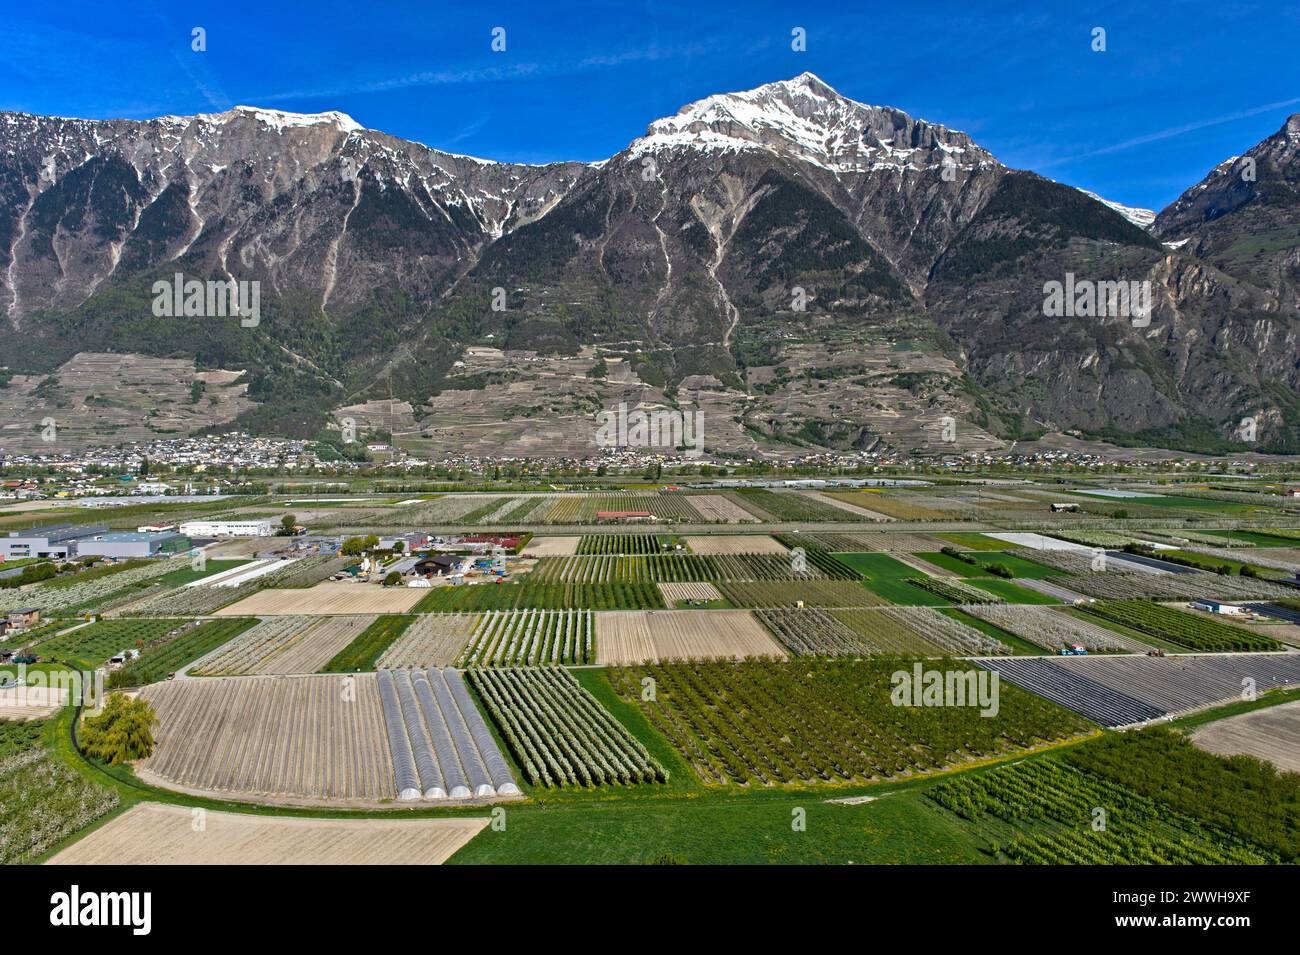 Campi e piantagioni per la coltivazione di frutta e verdura sotto la cima innevata del Grand Chavalard nella valle del Rodano, Charrat Foto Stock